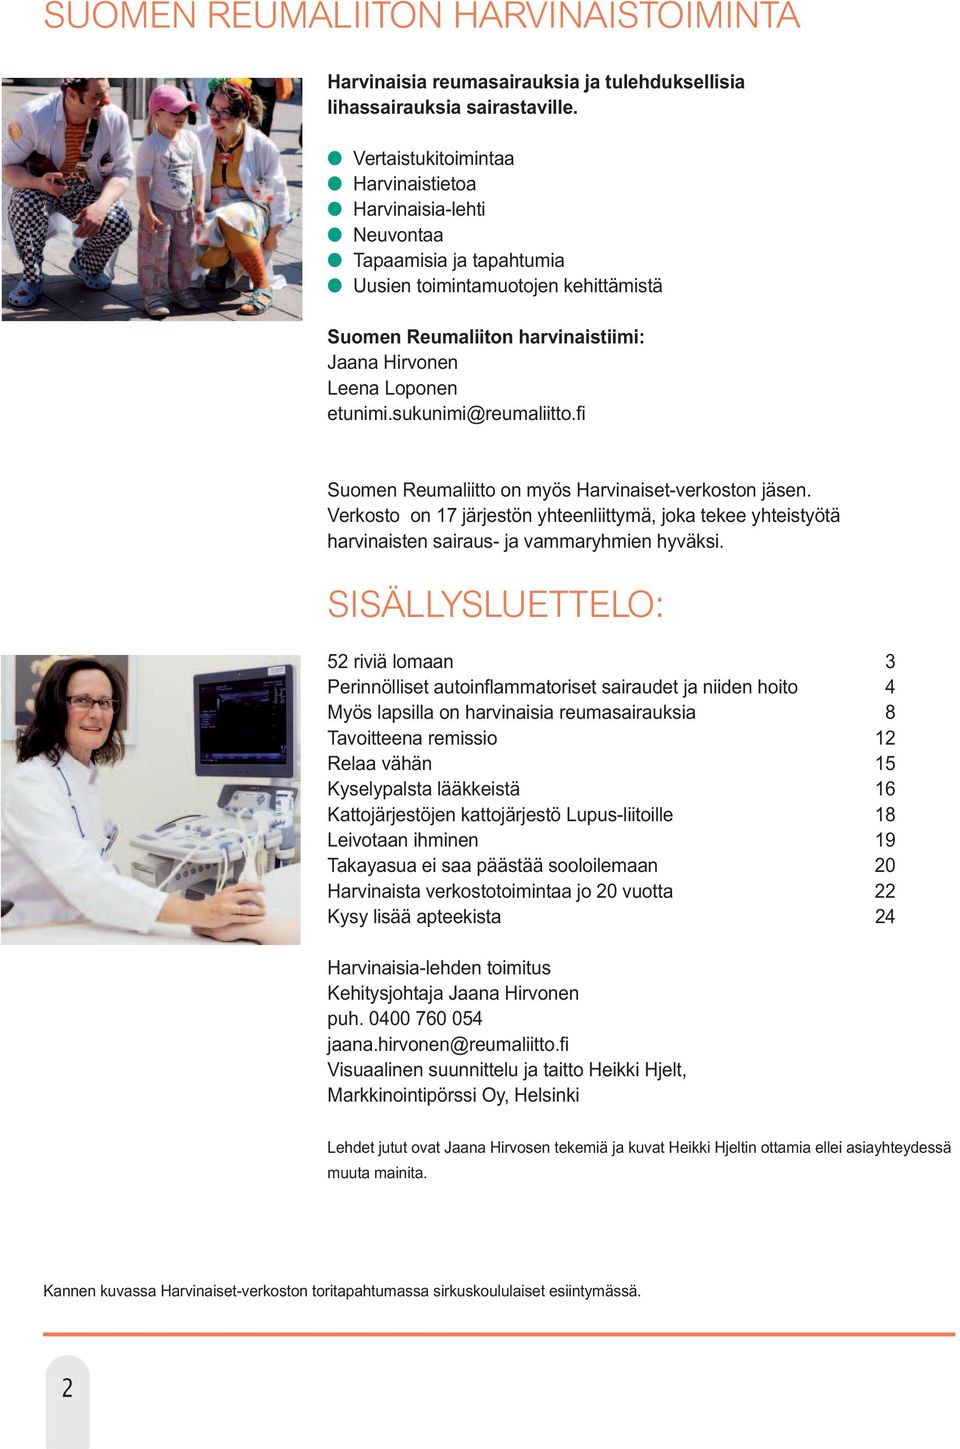 sukunimi@reumaliitto.fi Suomen Reumaliitto on myös Harvinaiset-verkoston jäsen. Verkosto on 17 järjestön yhteenliittymä, joka tekee yhteistyötä harvinaisten sairaus- ja vammaryhmien hyväksi.